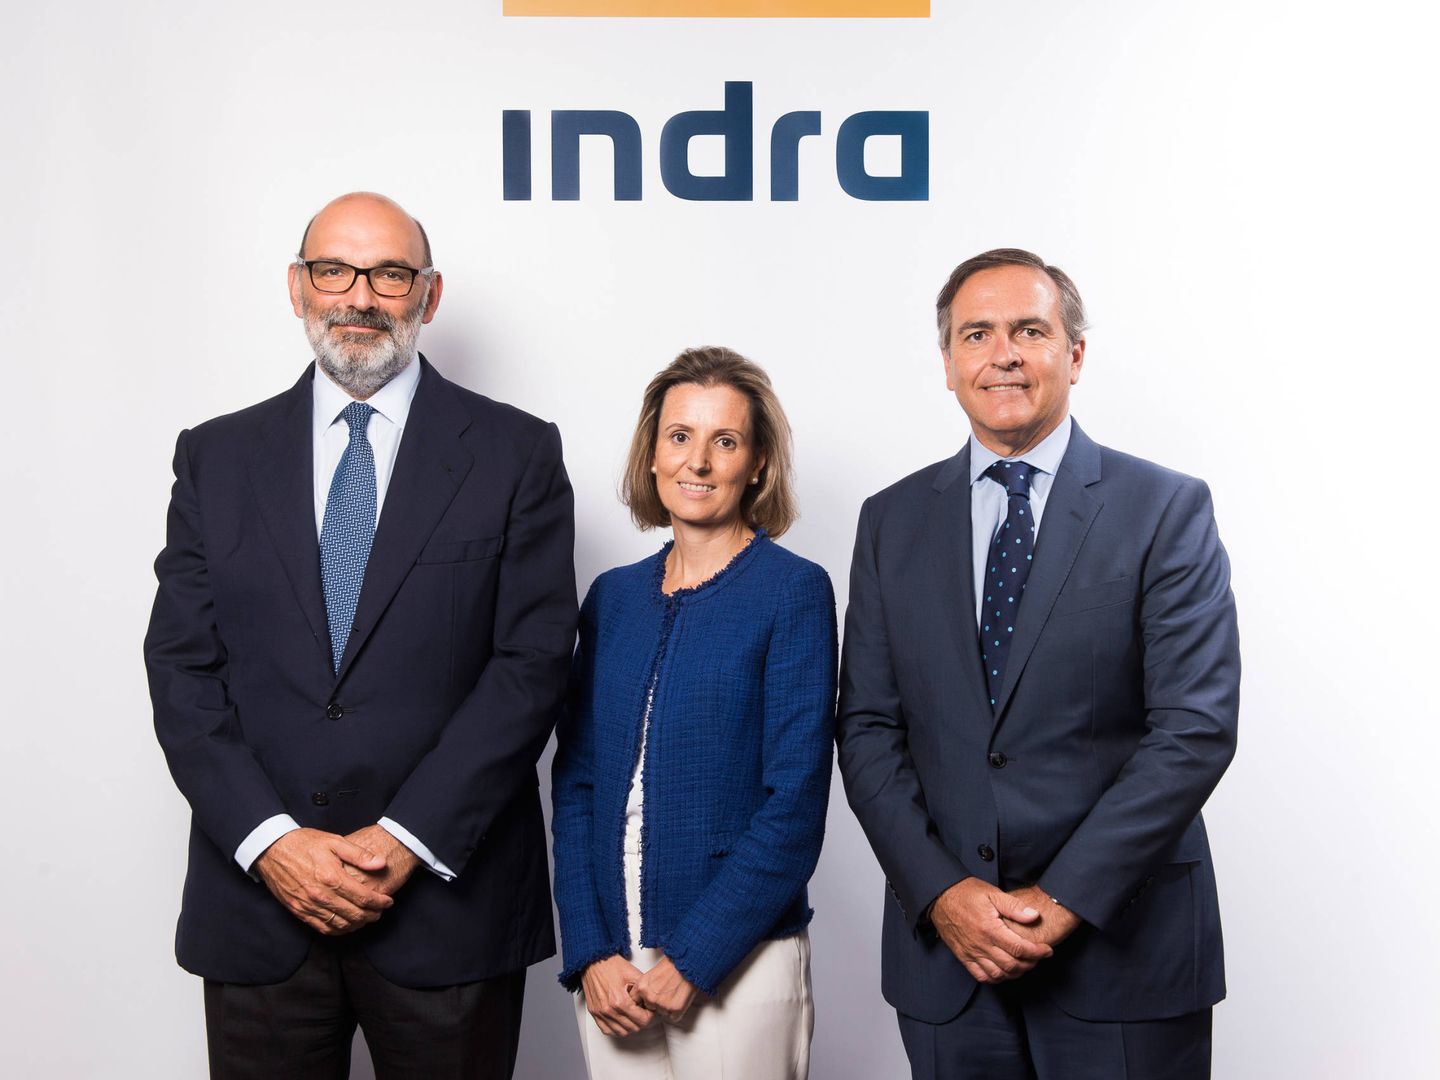 Fernando Abril-Martorell (Presidente de Indra), Cristina Ruiz (Consejera Directora General de TI) e Ignacio Mataix (Consejero Director General de T&D).